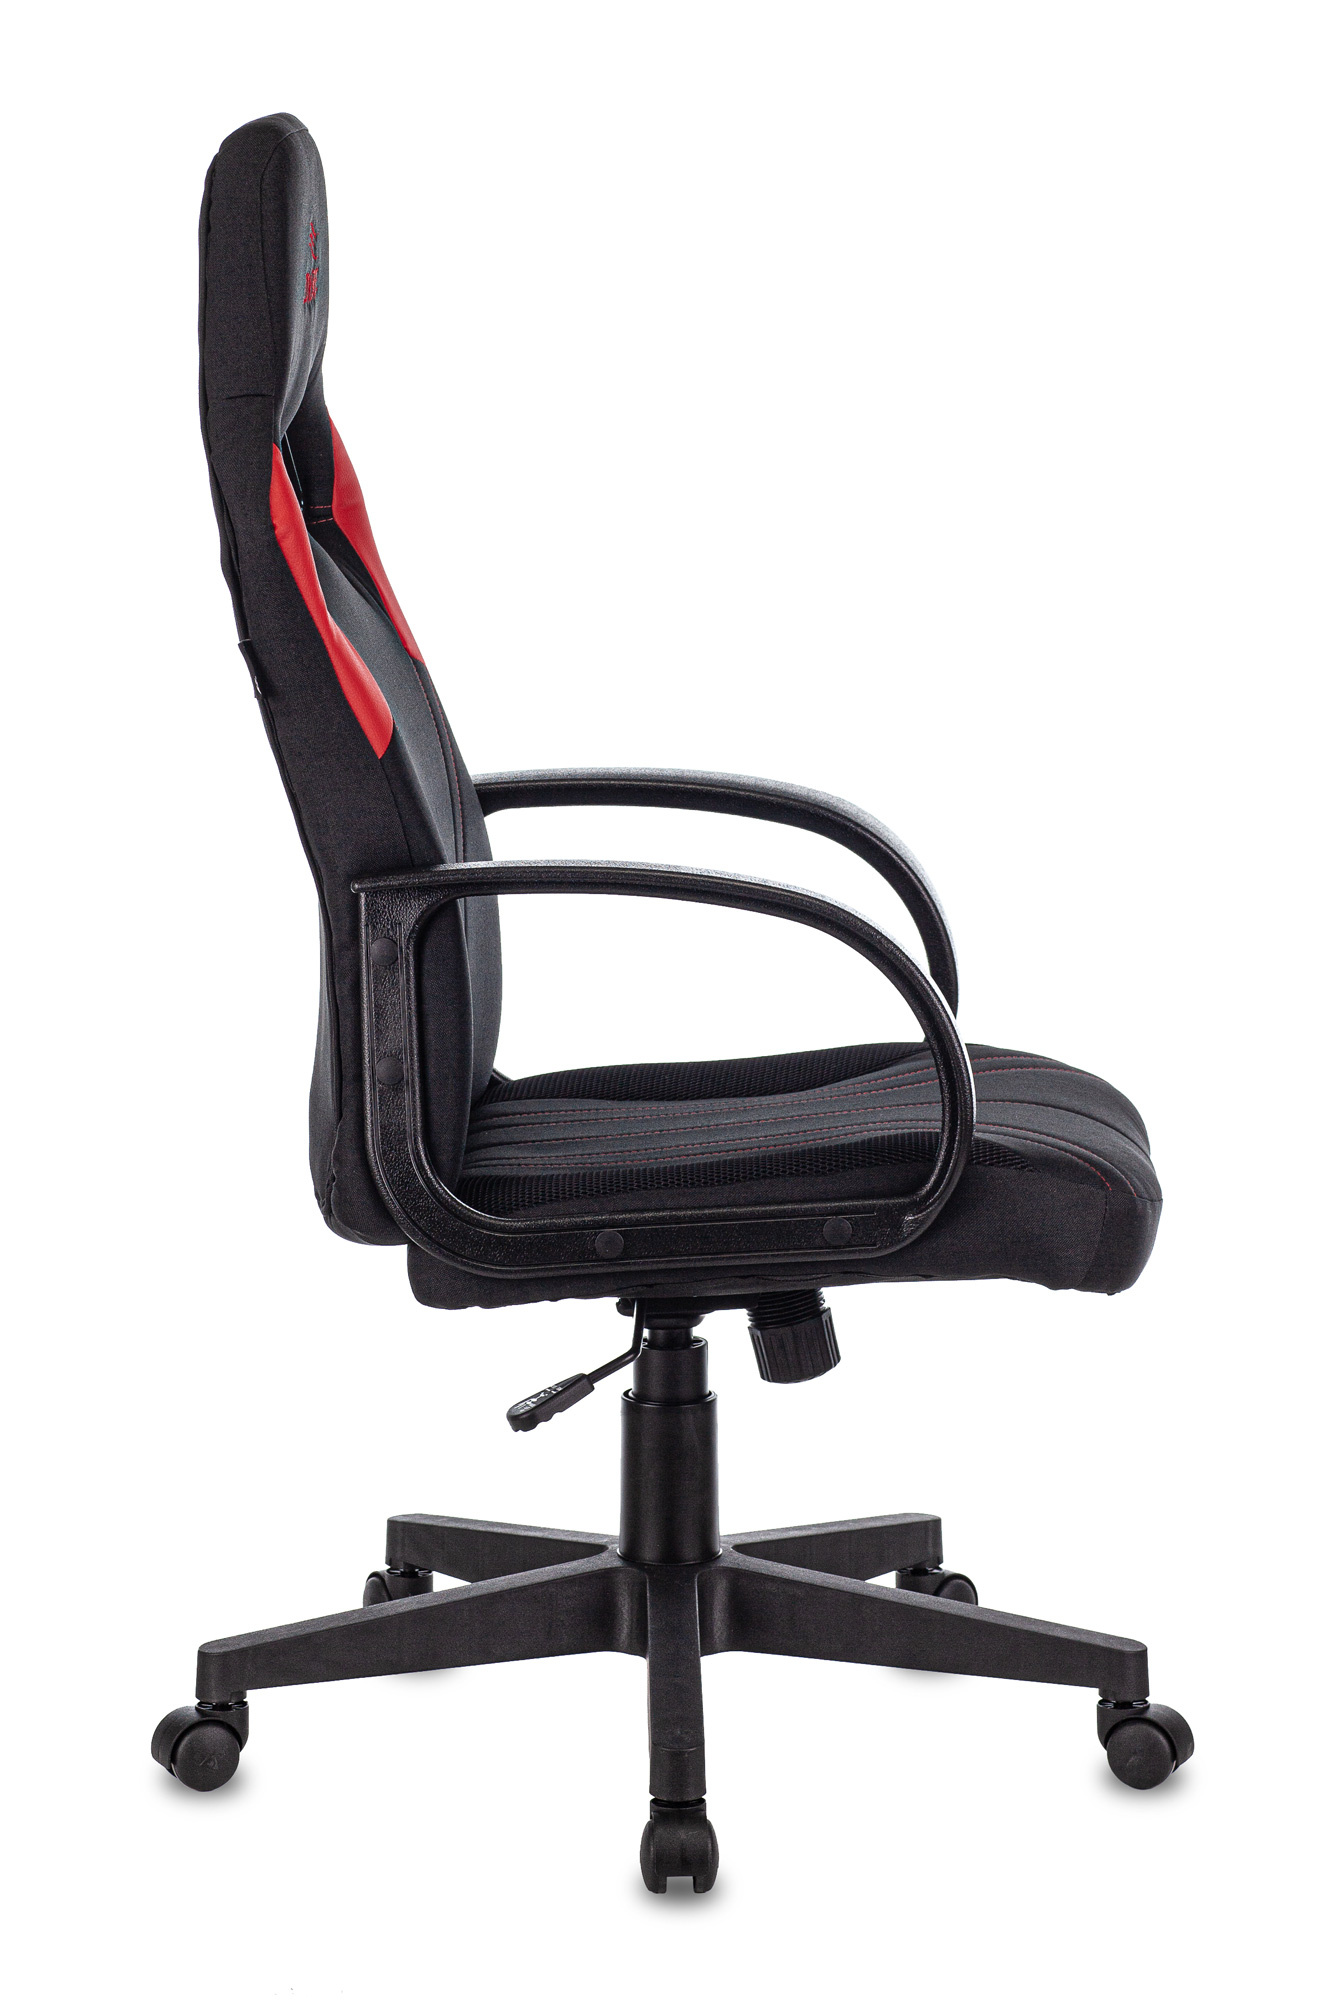 Кресло геймерское ZOMBIE RUNNER цвет Черный/Красный Бюрократ нагрузка 120 кг